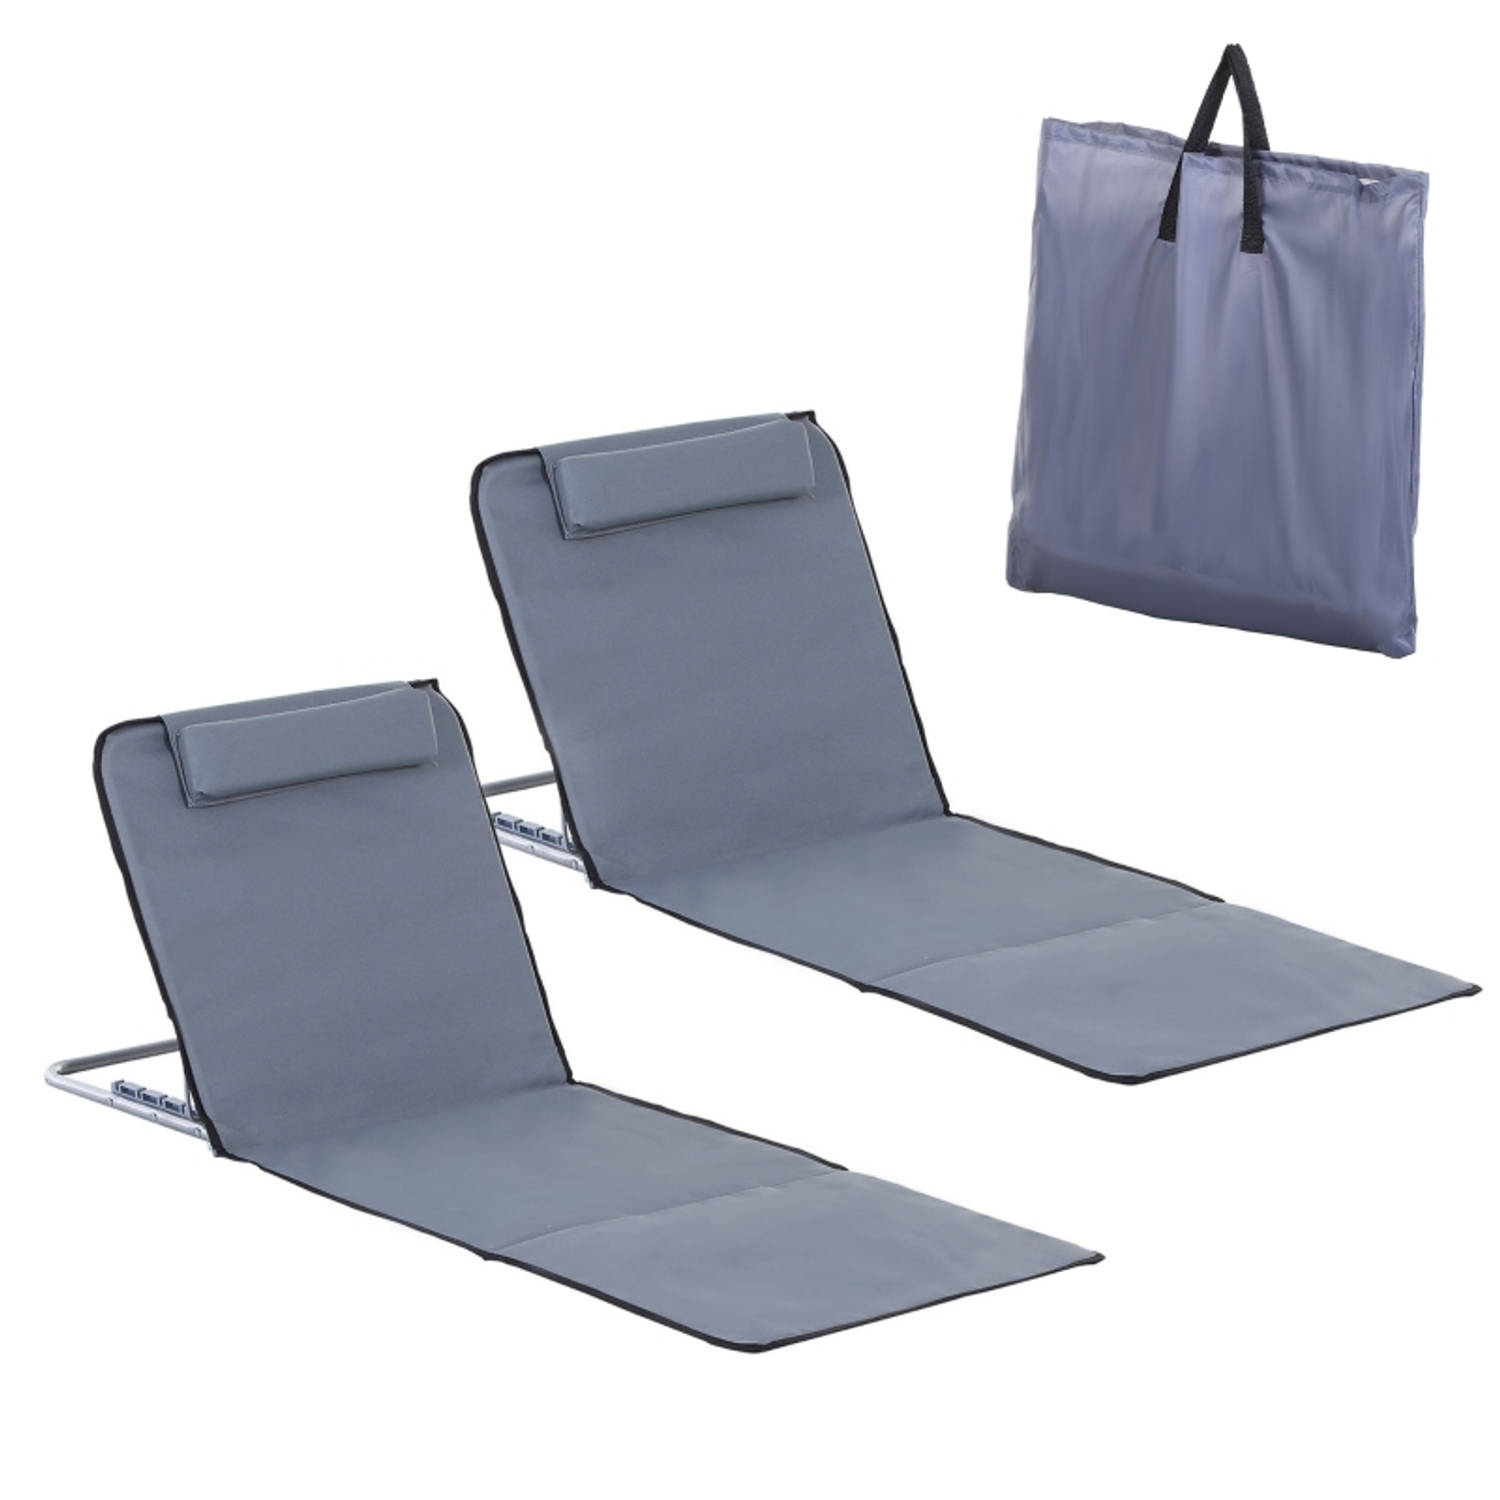 Strandstoel met draagtas - Strandmat - Strand - Vouwmatras - Ligbed - Zonnebed - Staal - 134 x 48 x 33-43 cm